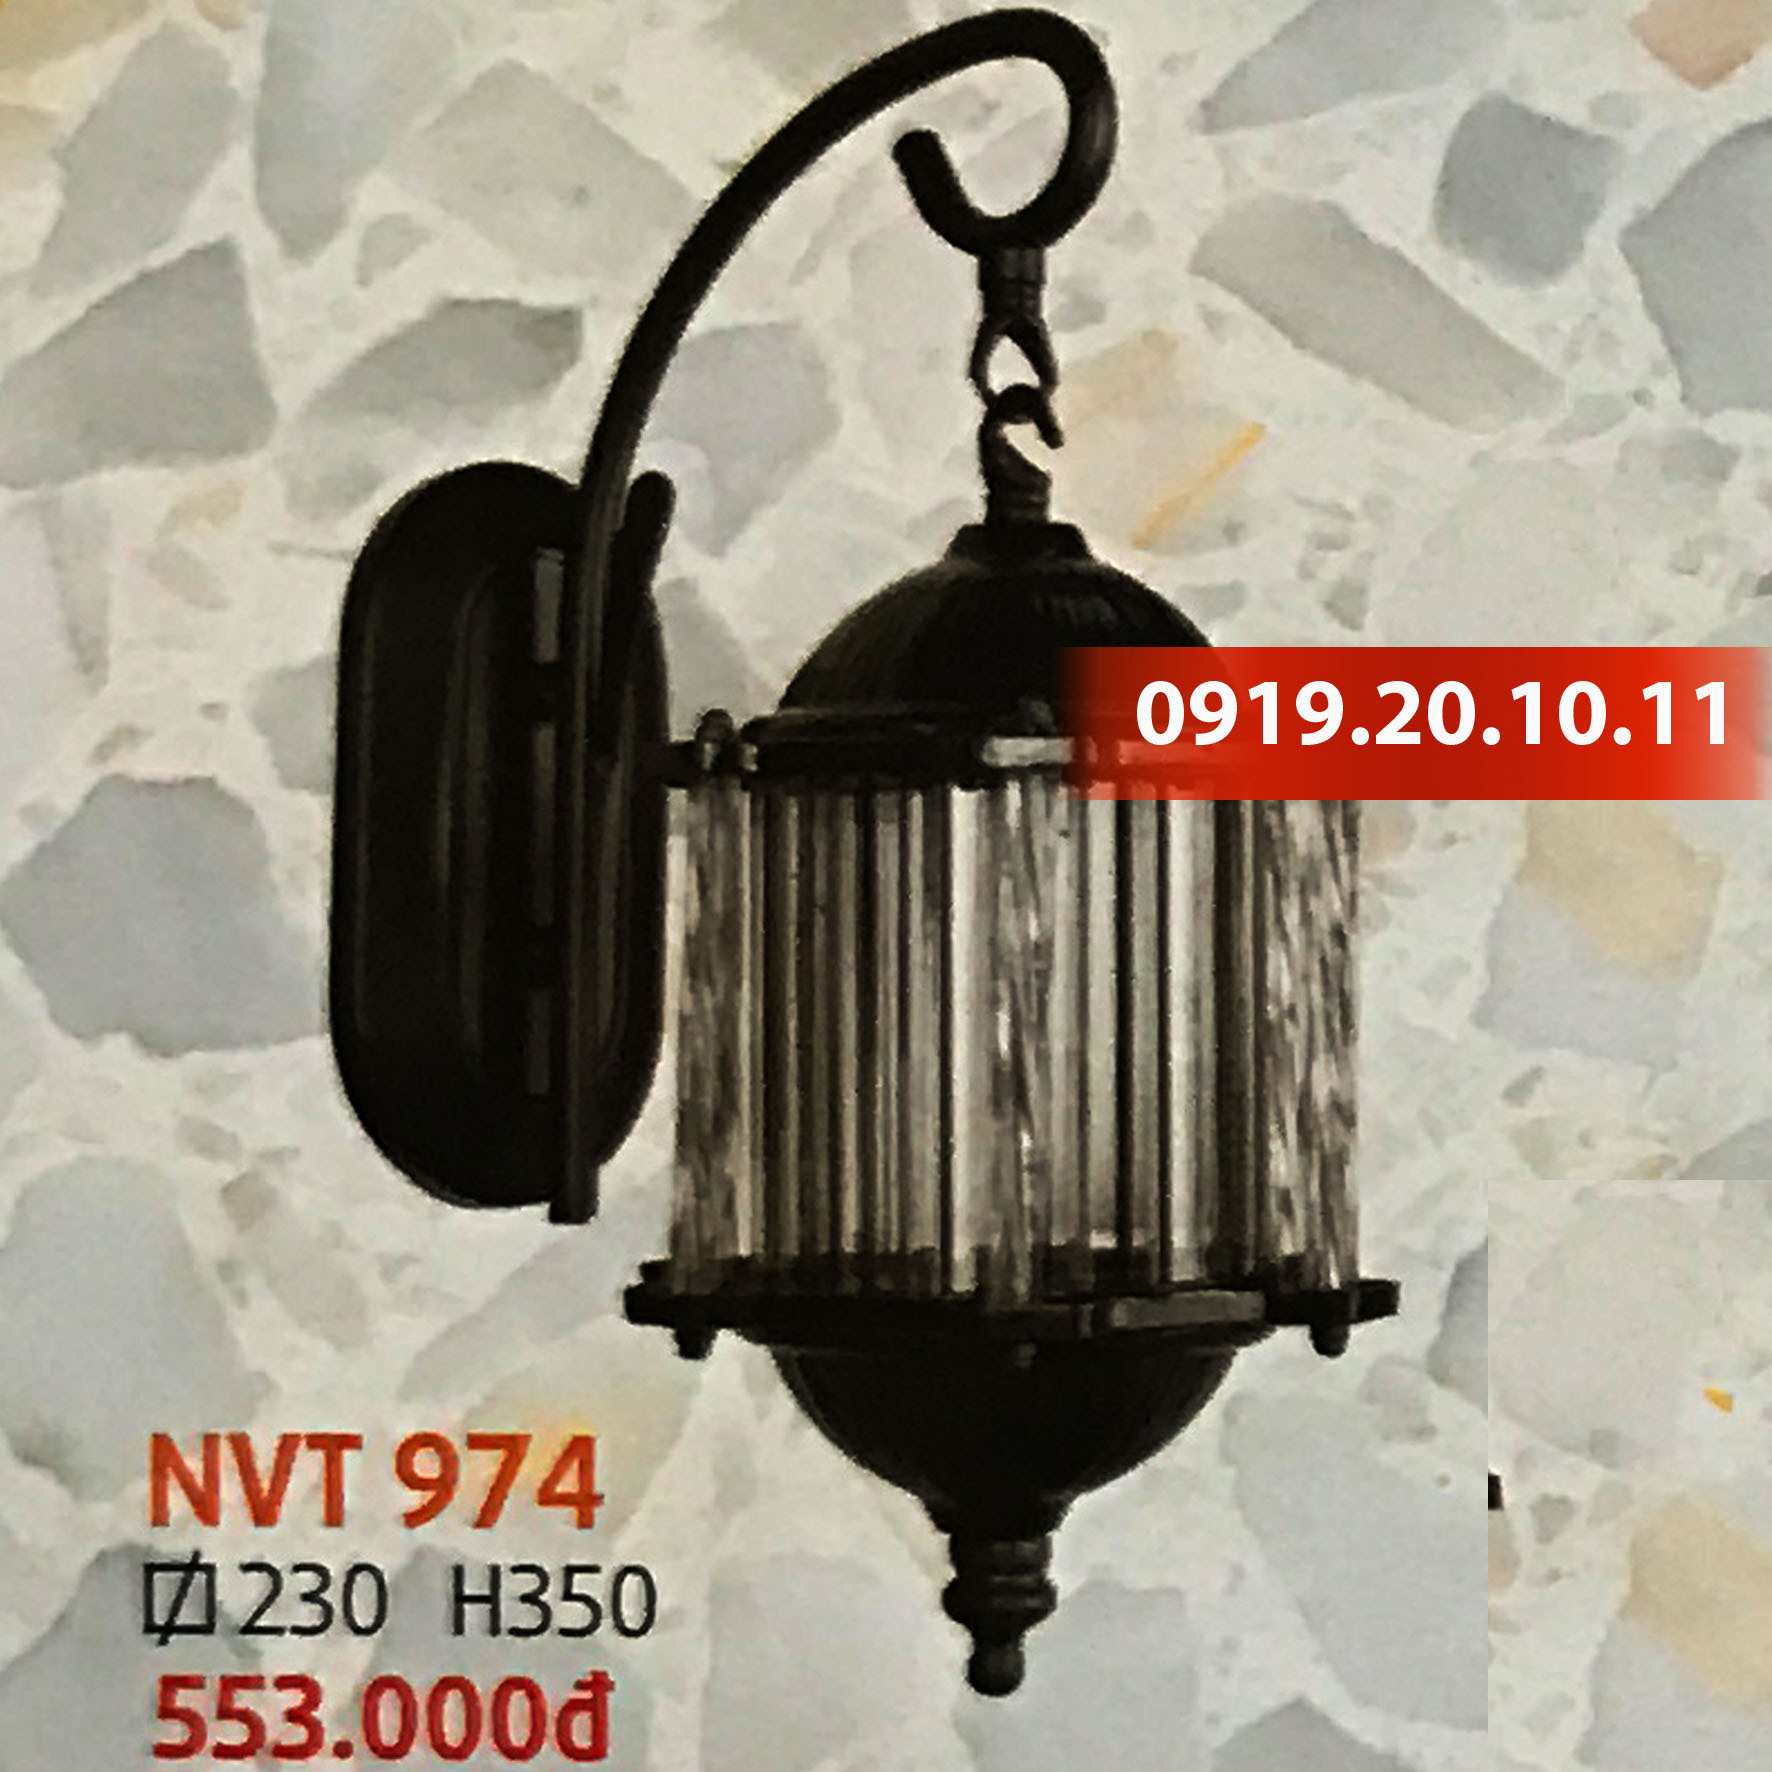 Đèn trang trí trụ cổng Netviet NVT-974